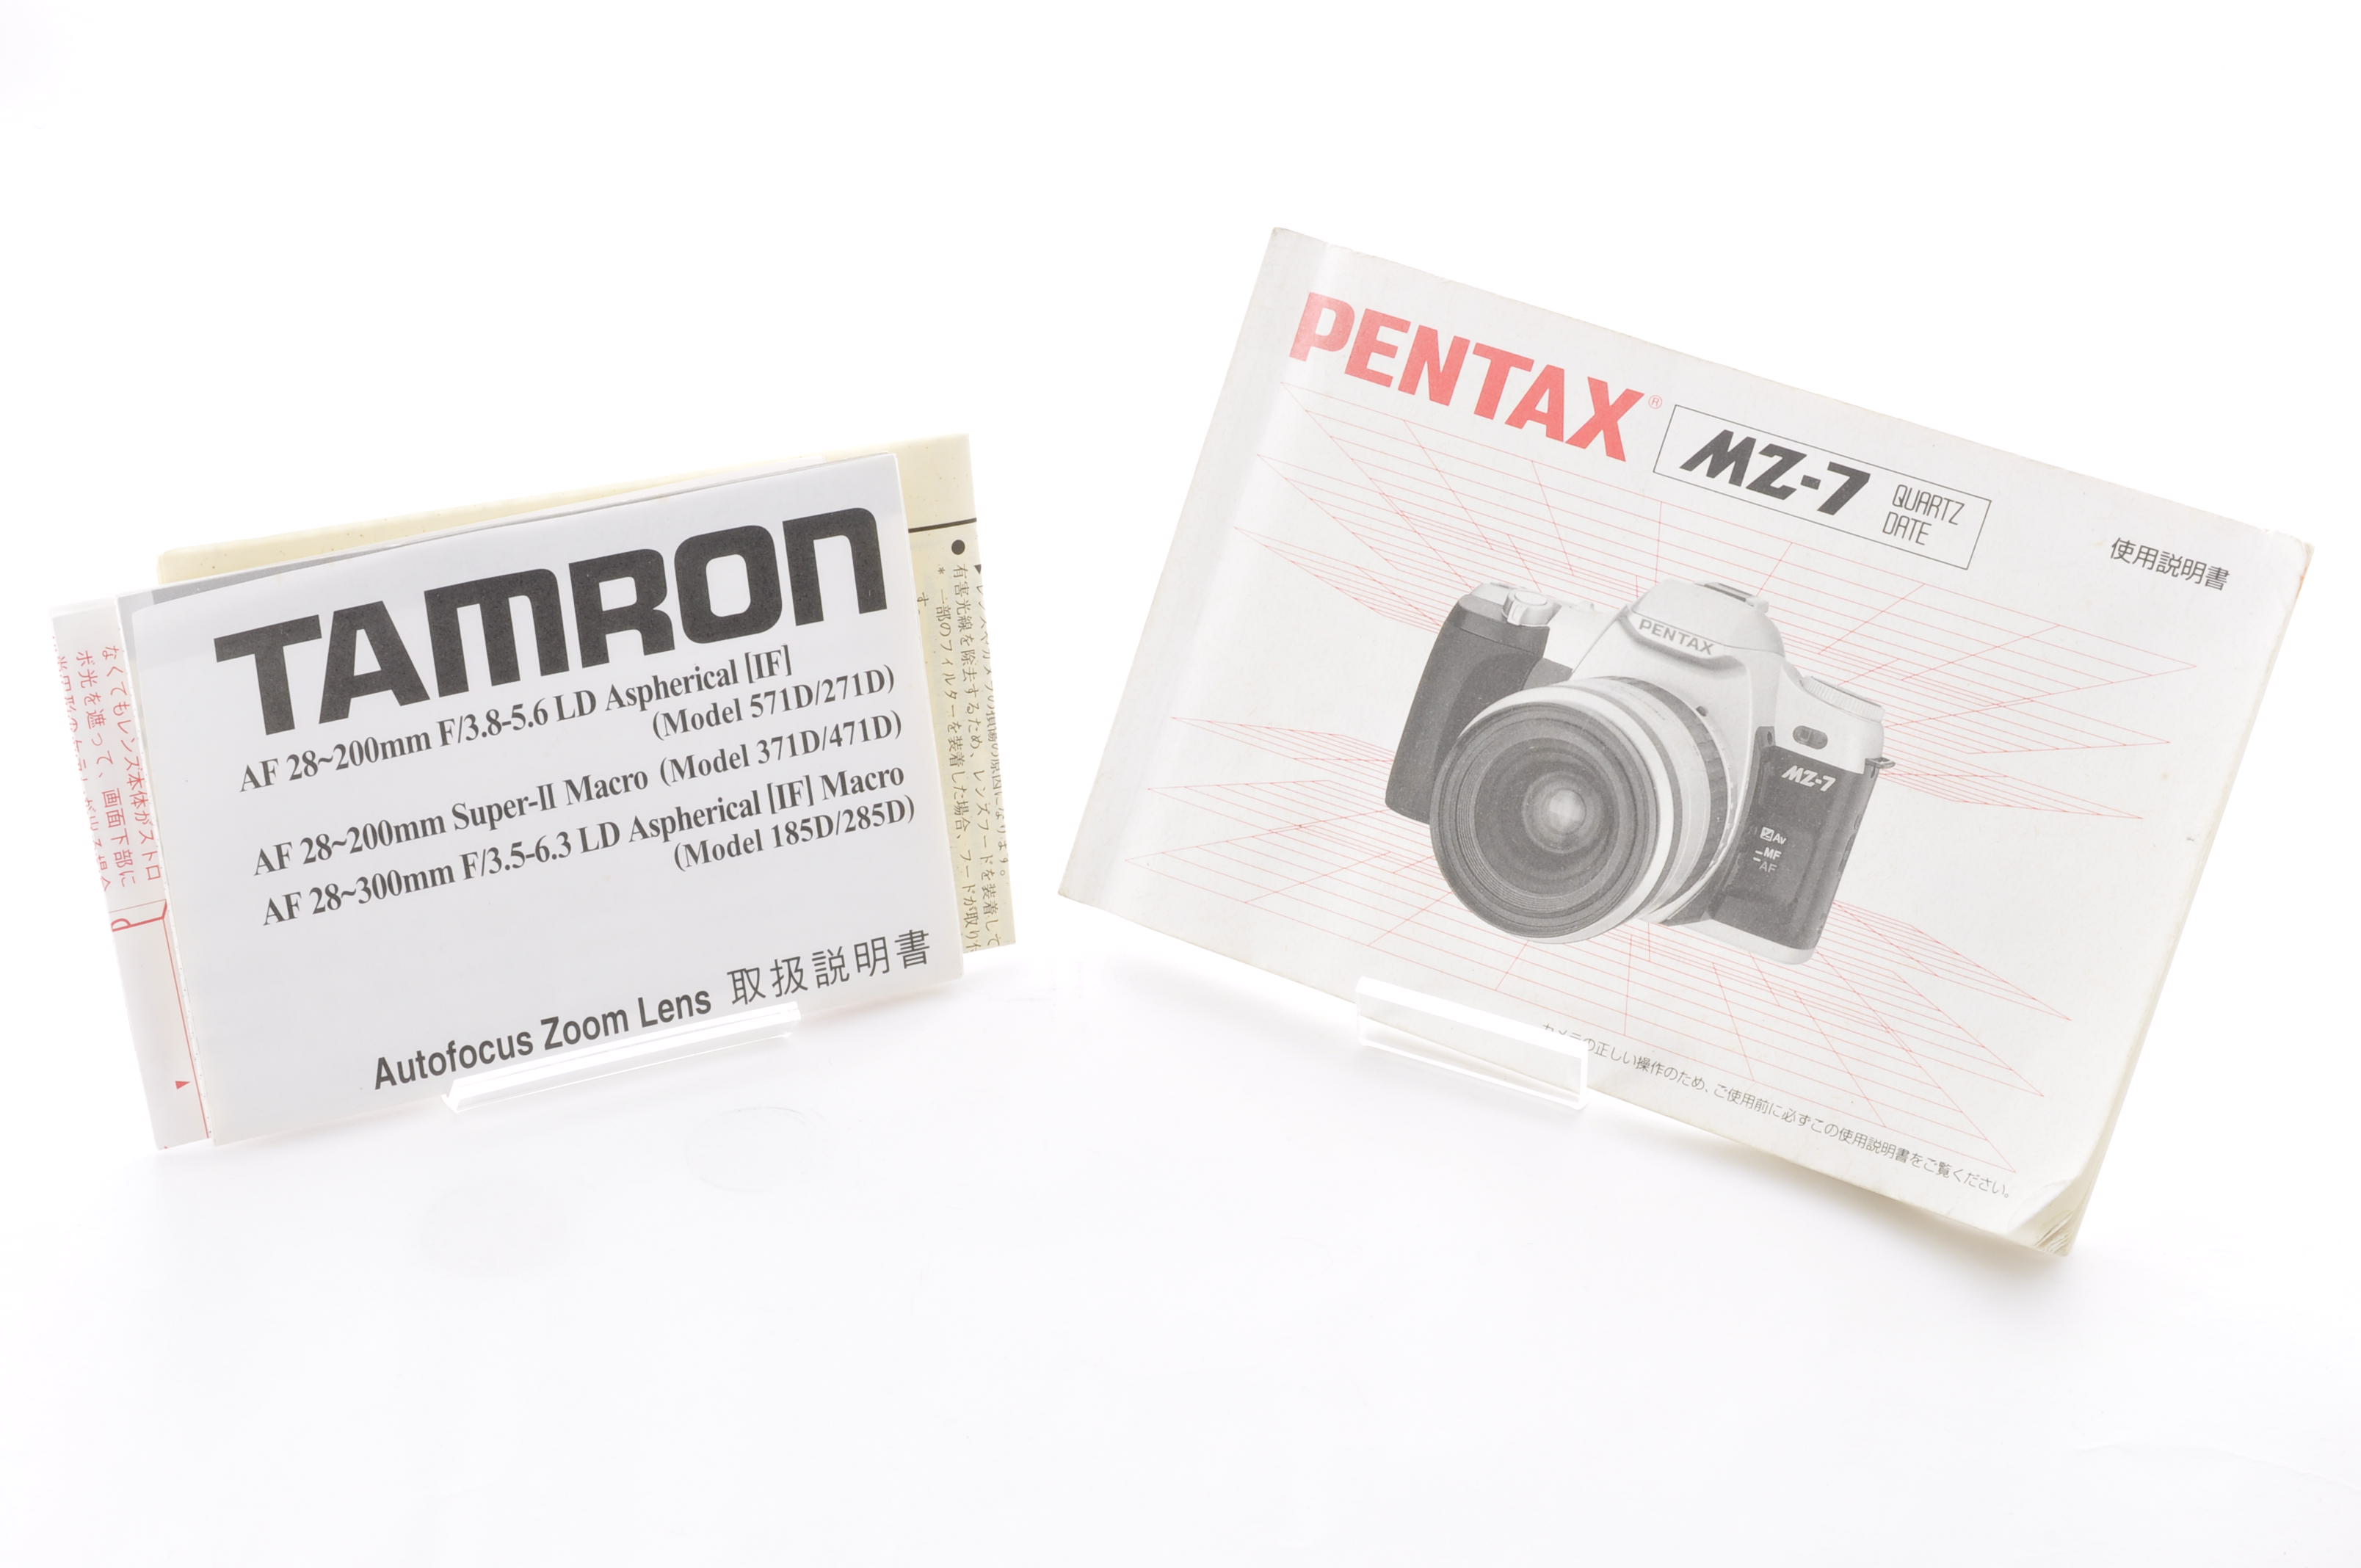 PENTAX MZ-7 35mm Film Camera [Near Mint] + Tamron 28-200mm F3.5-5.6 From Japan img22